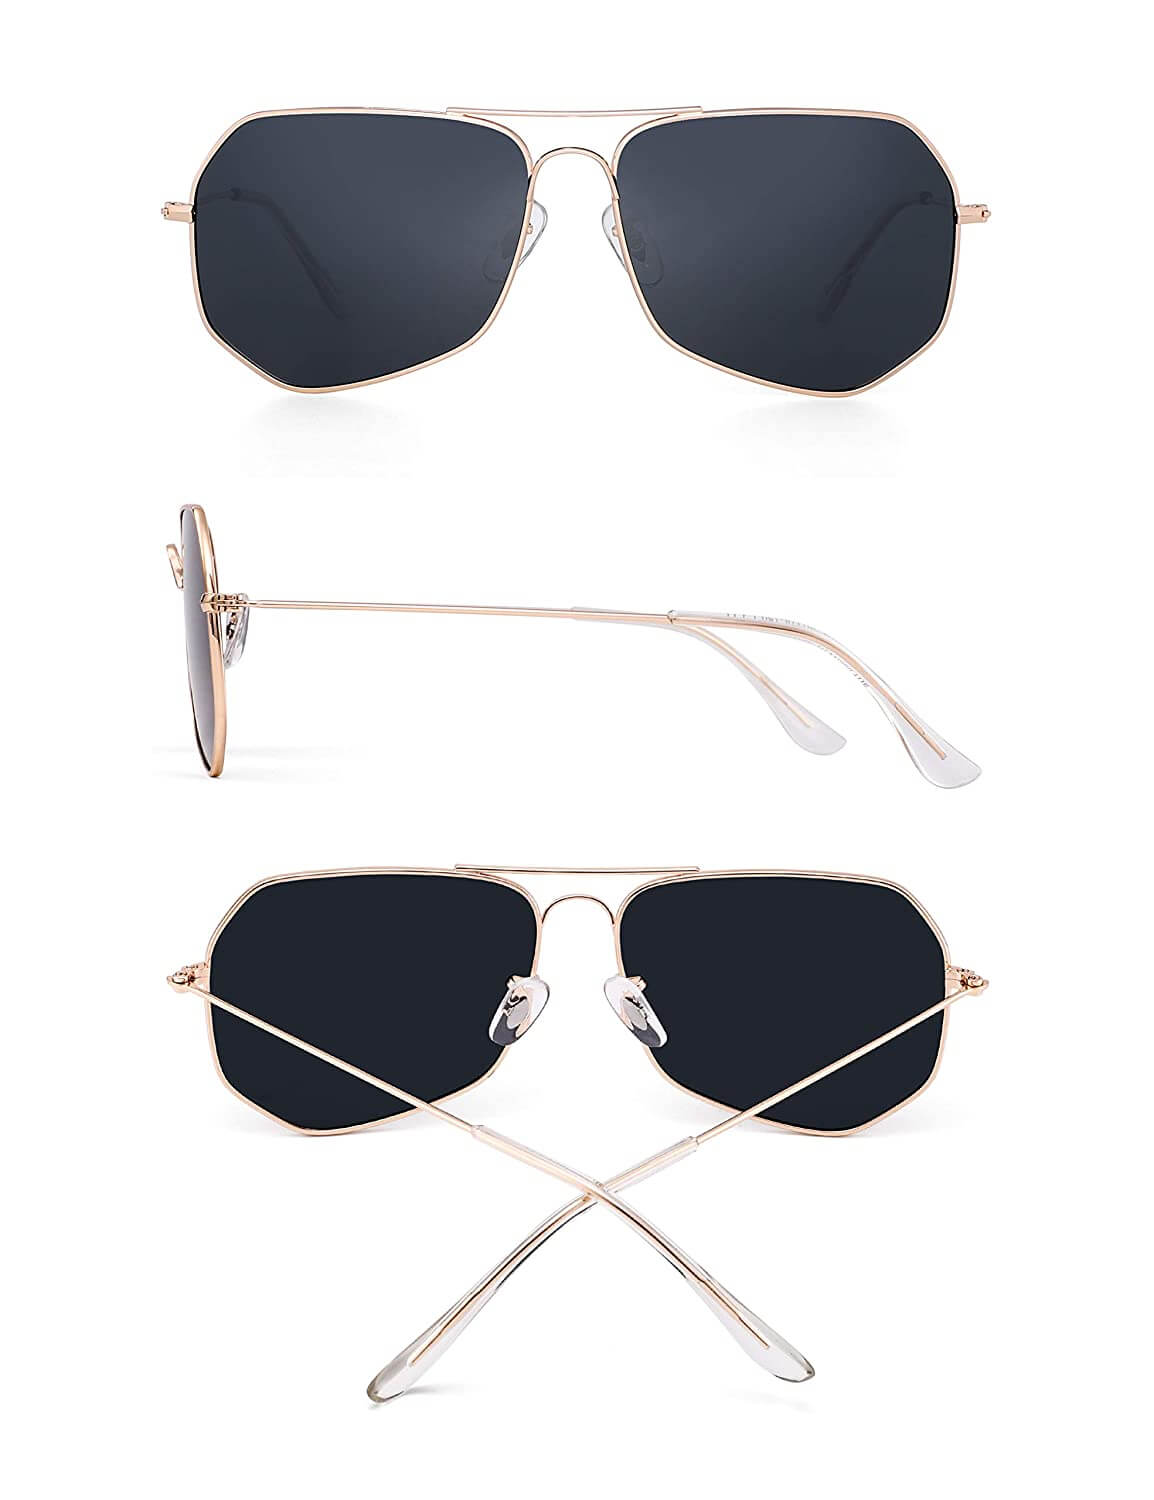 Hrinkar Stylish Pilot Full-Frame Metal Polarized Sunglasses for